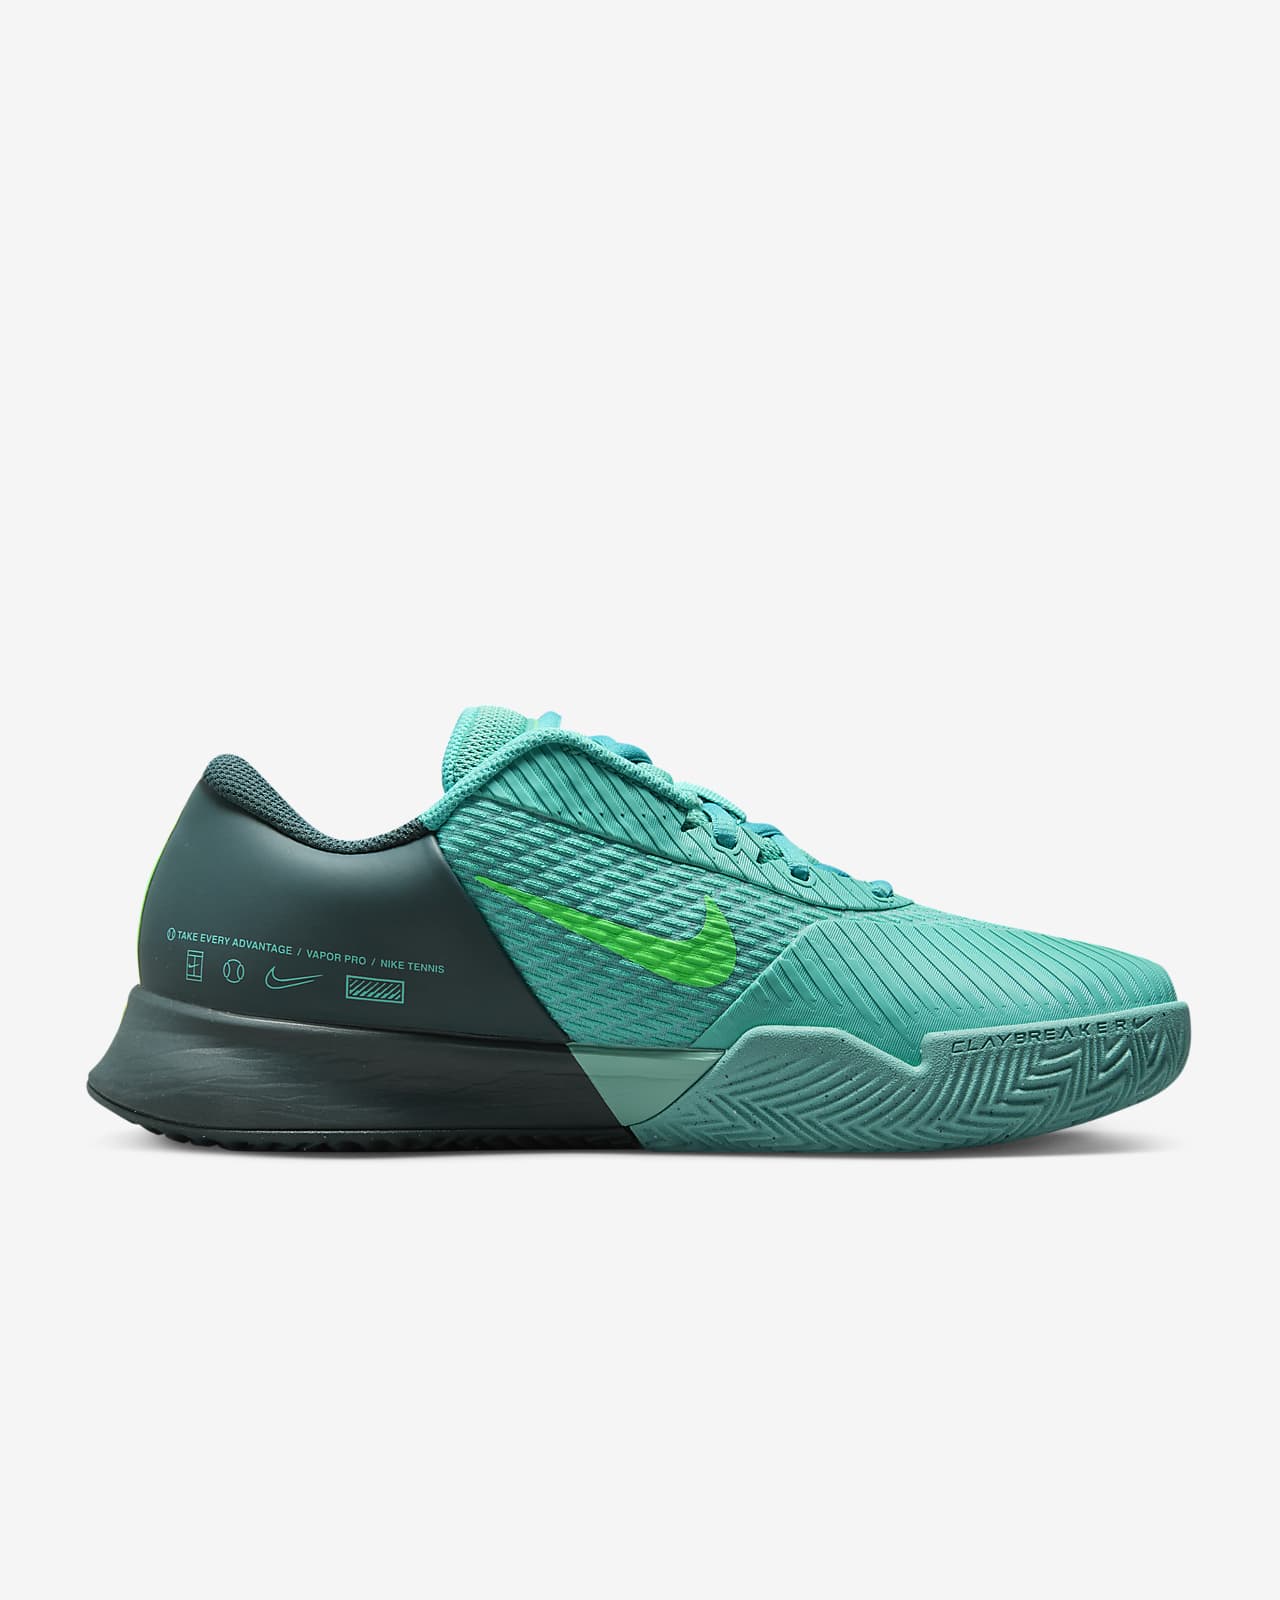 Manto invención santo NikeCourt Air Zoom Vapor Pro 2 Men's Clay Tennis Shoes. Nike.com